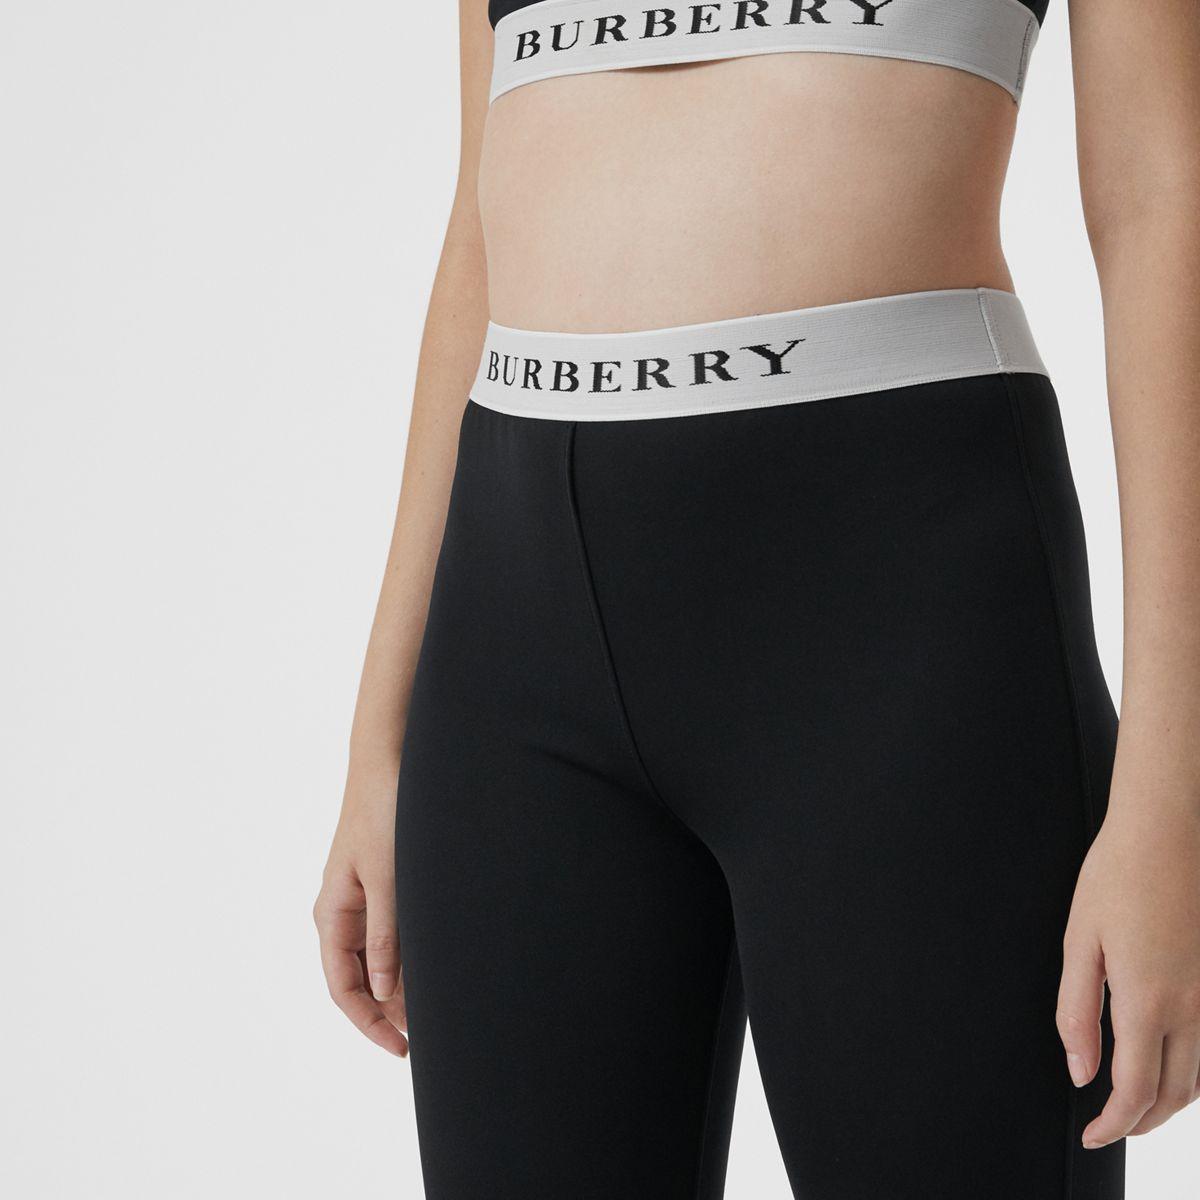 burberry black leggings